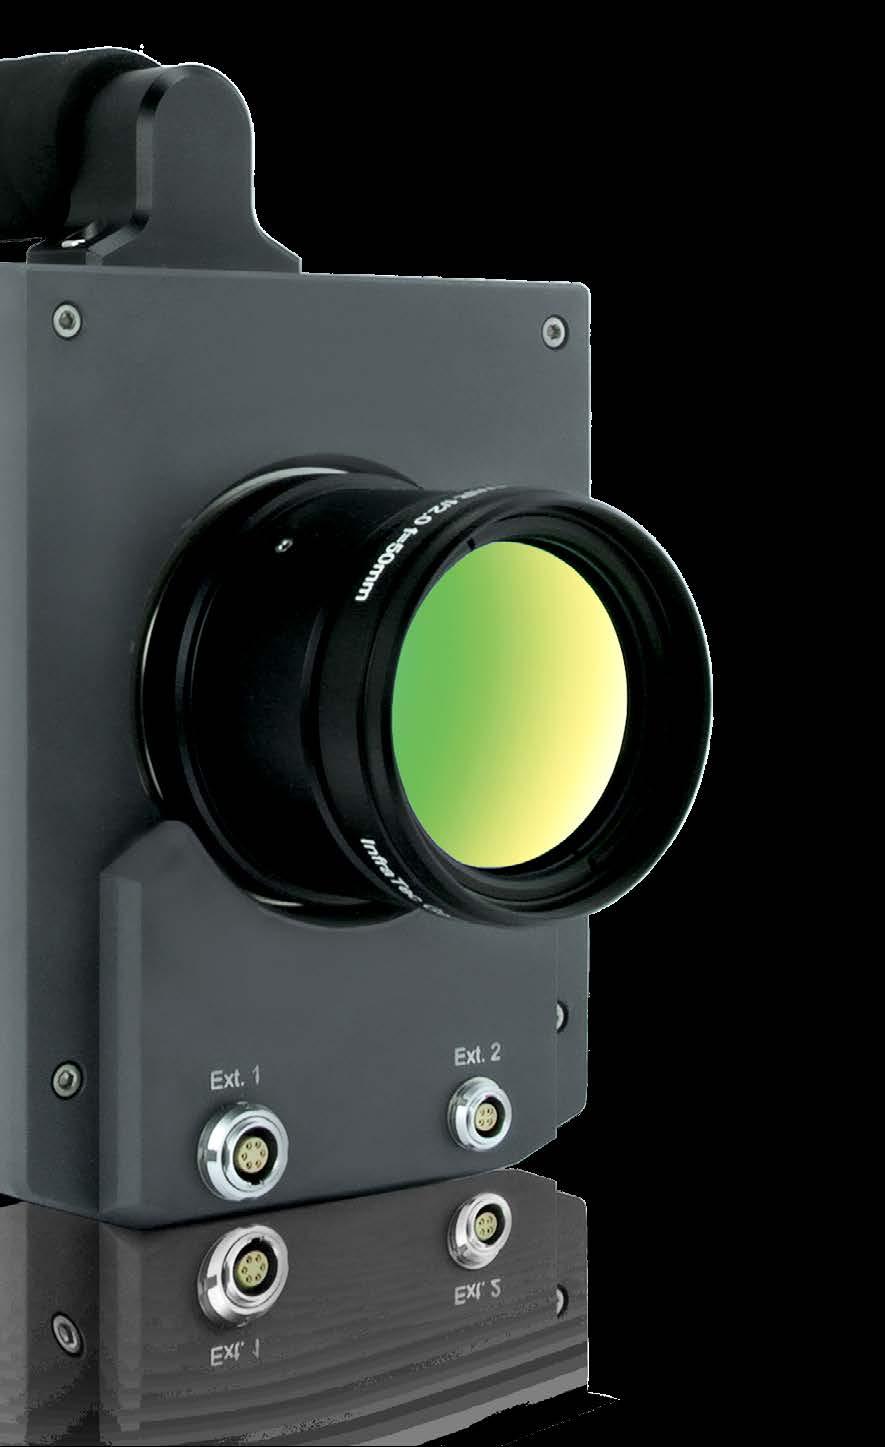 der Kameraoberseite ist sehr kompakt und schützt auch im härteren Einsatz zuverlässig die empfindliche Sensorik und Elektronik.